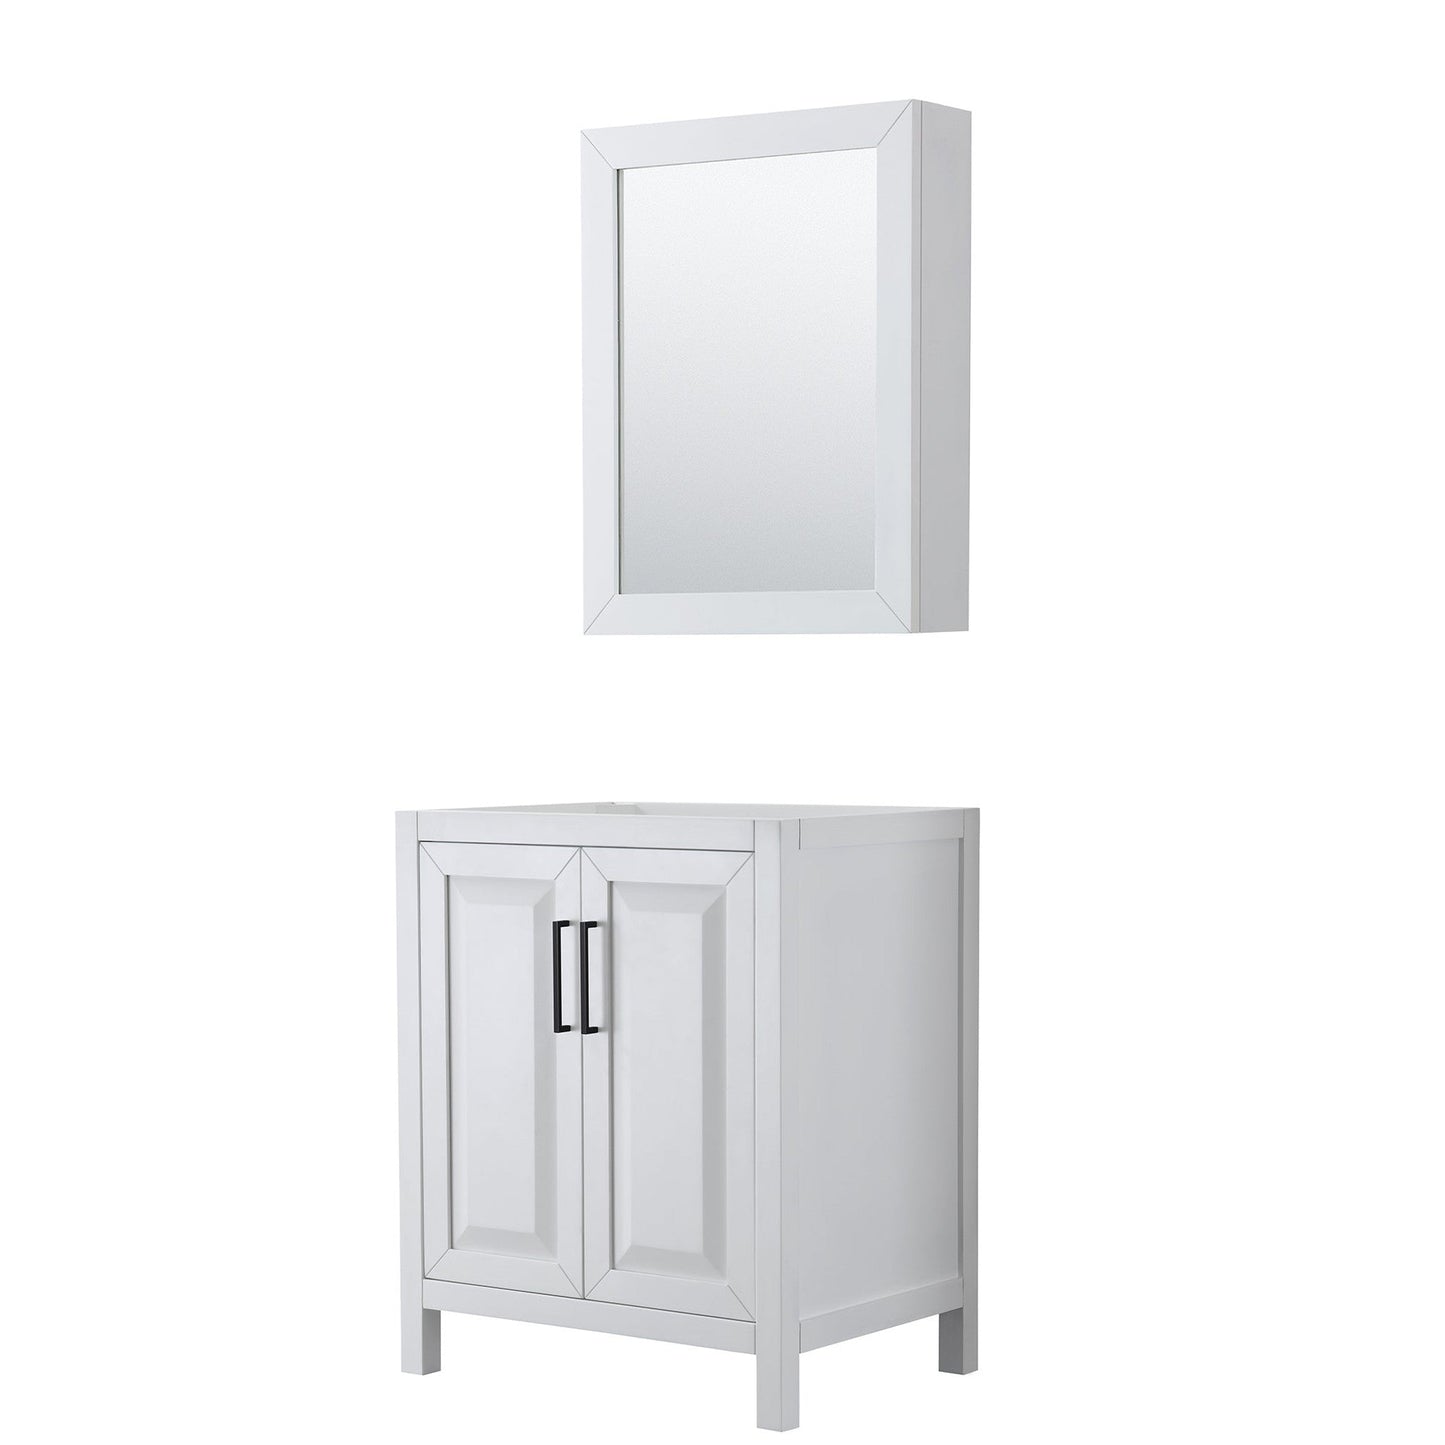 Daria 30" Single Bathroom Vanity in White, No Countertop, No Sink, Matte Black Trim, Medicine Cabinet